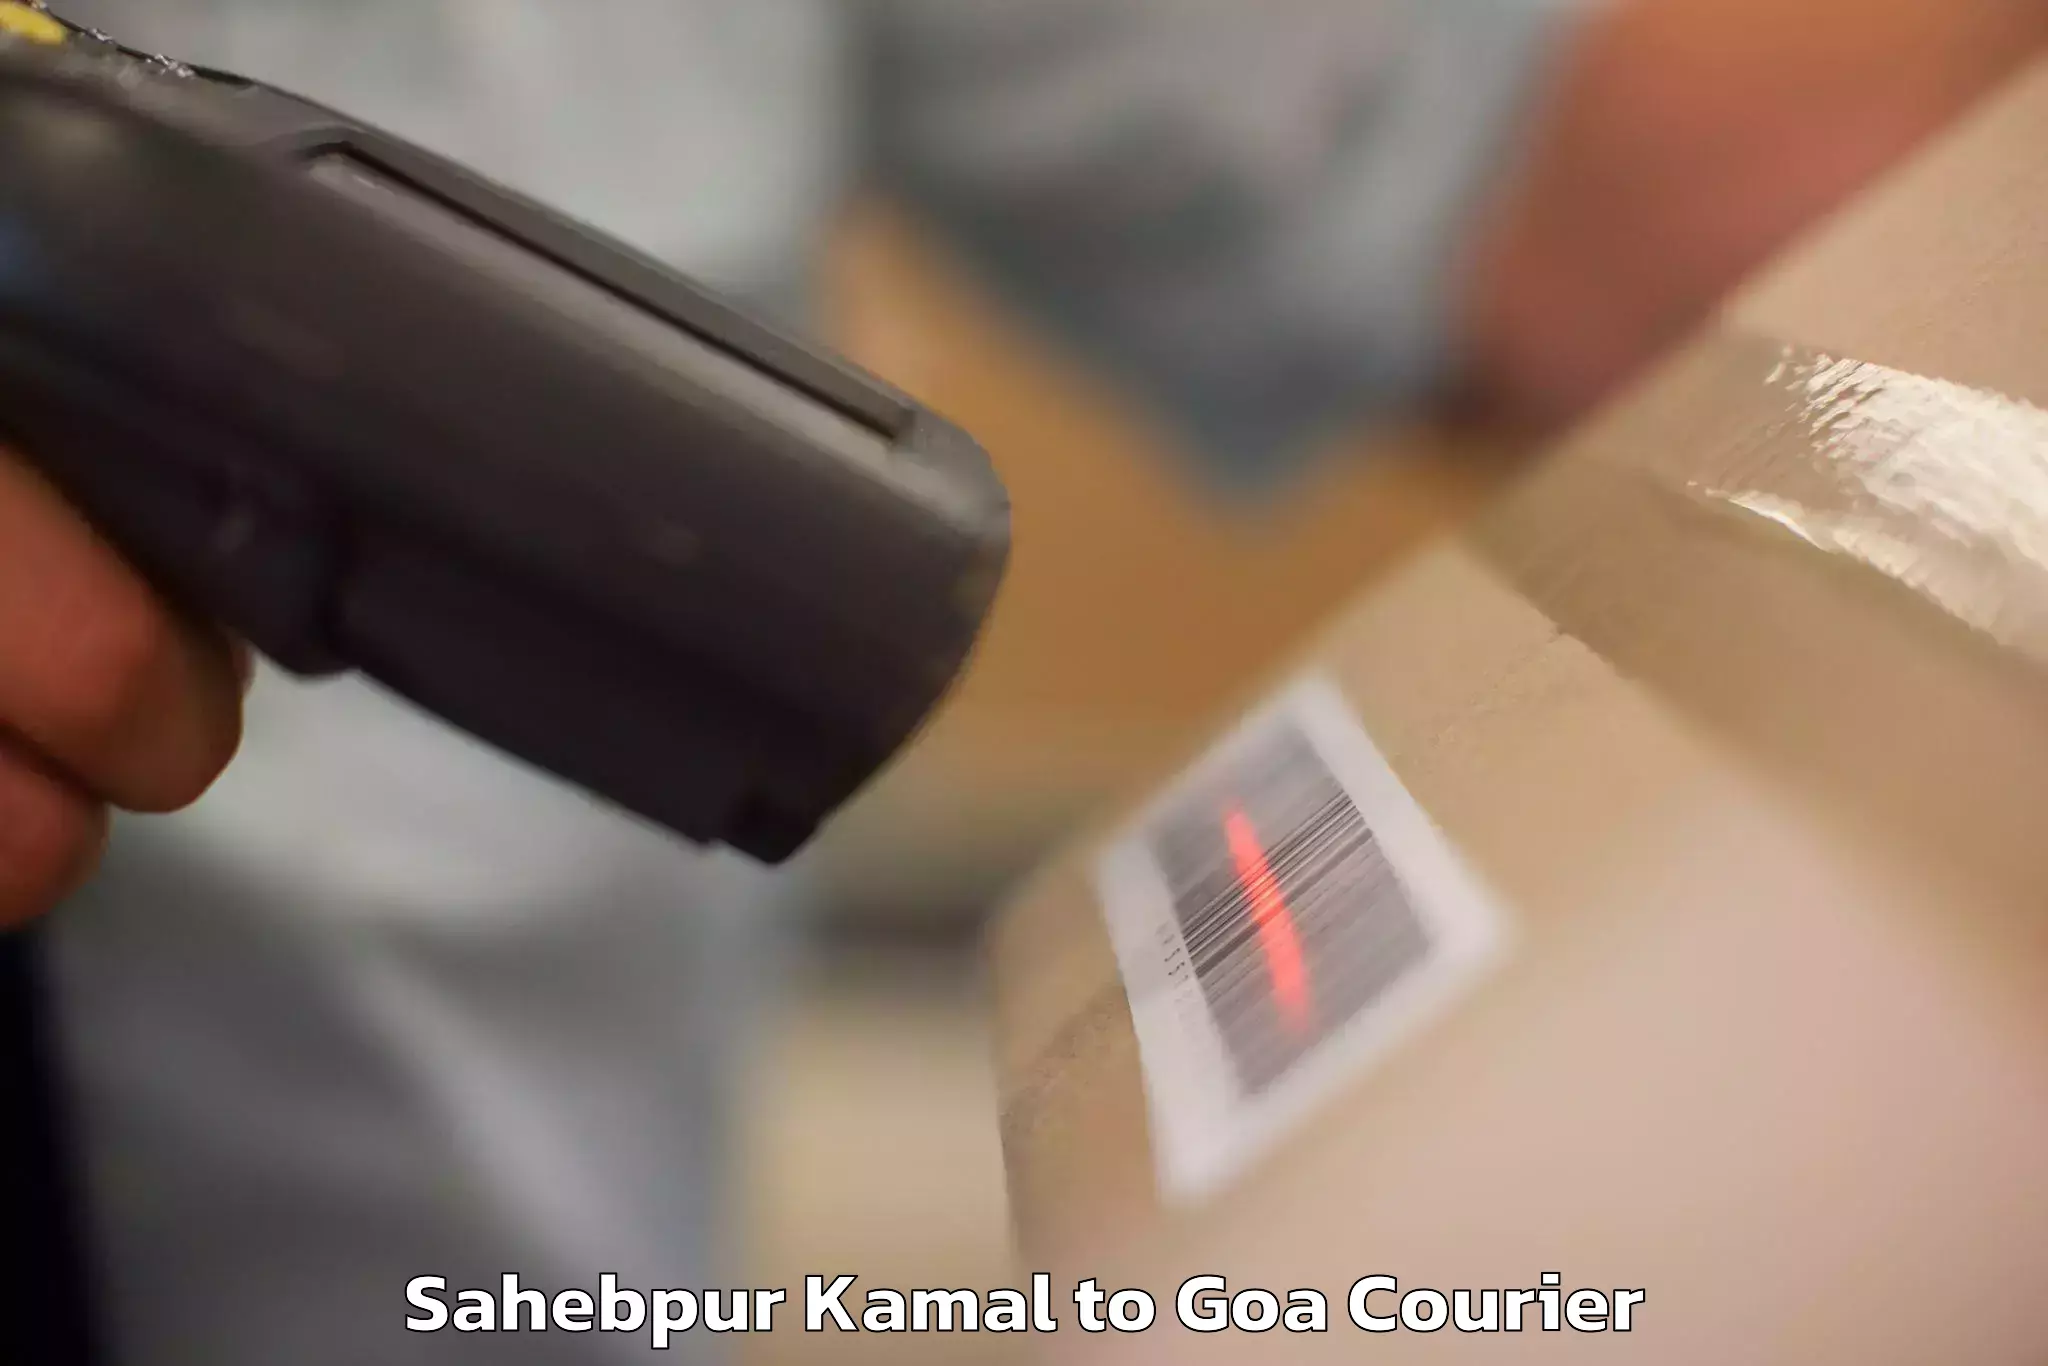 Baggage delivery management Sahebpur Kamal to Sanvordem